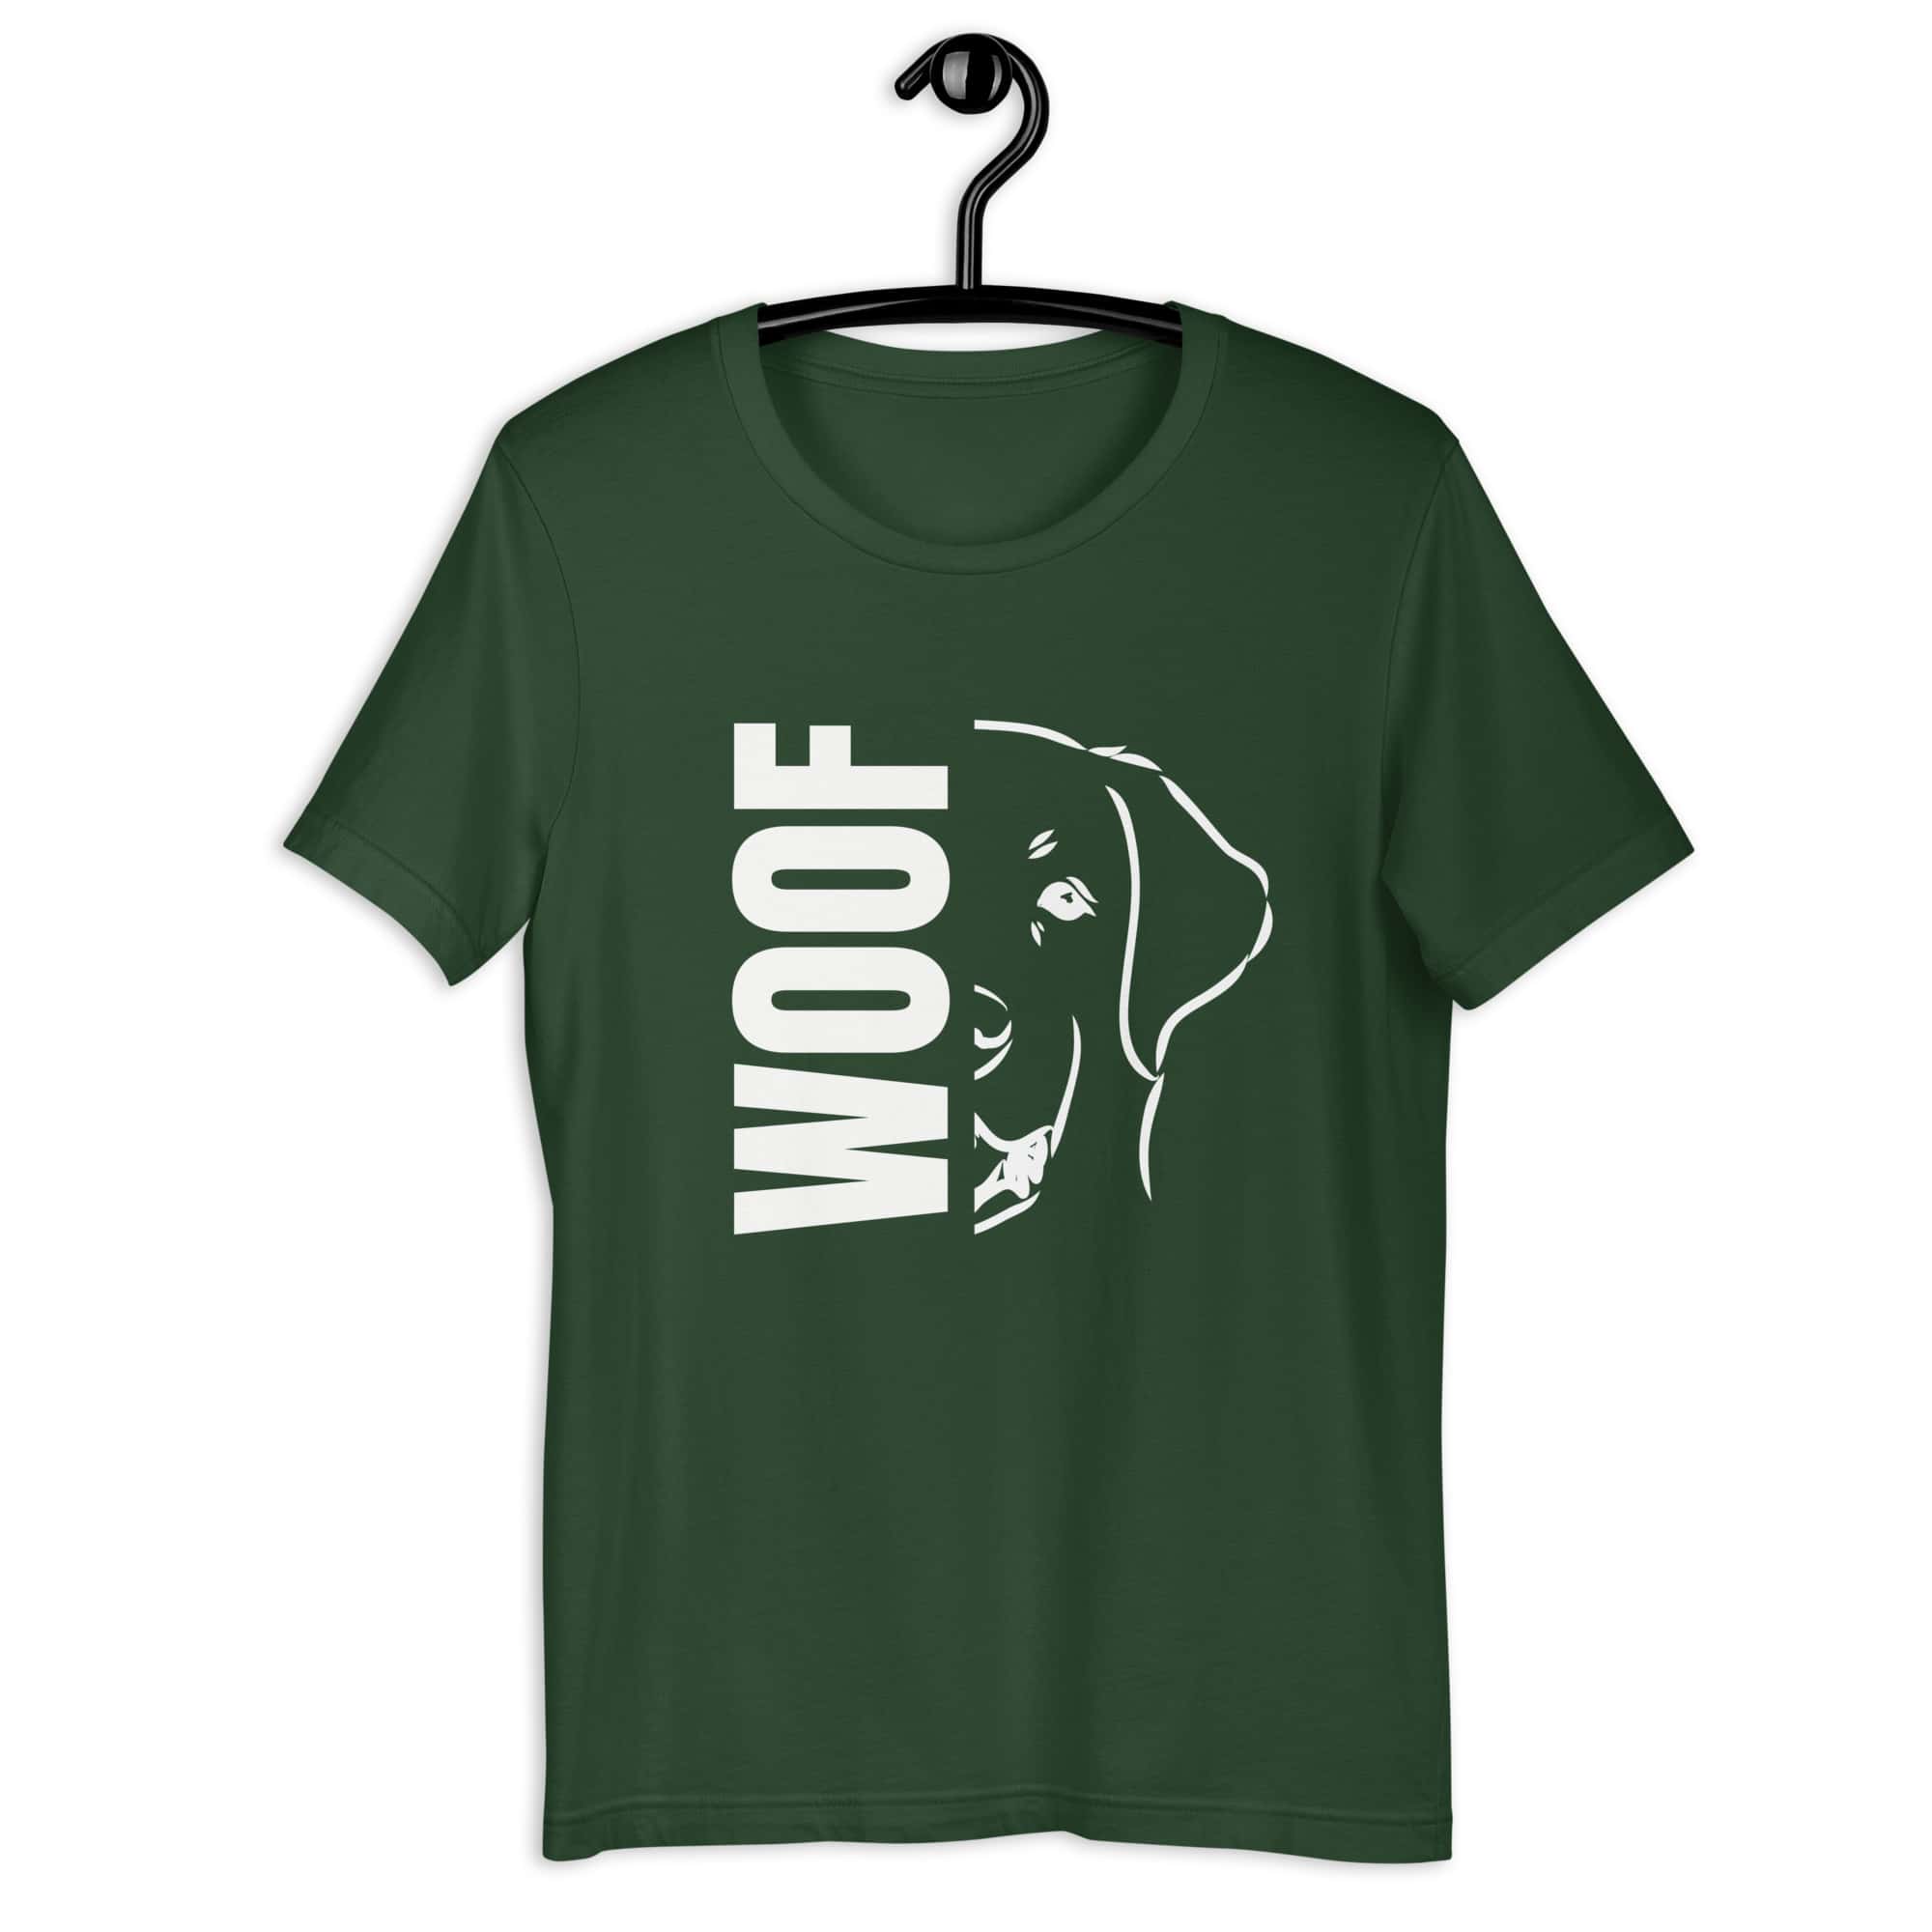 Woof Golden Retrievers Unisex T-Shirt green